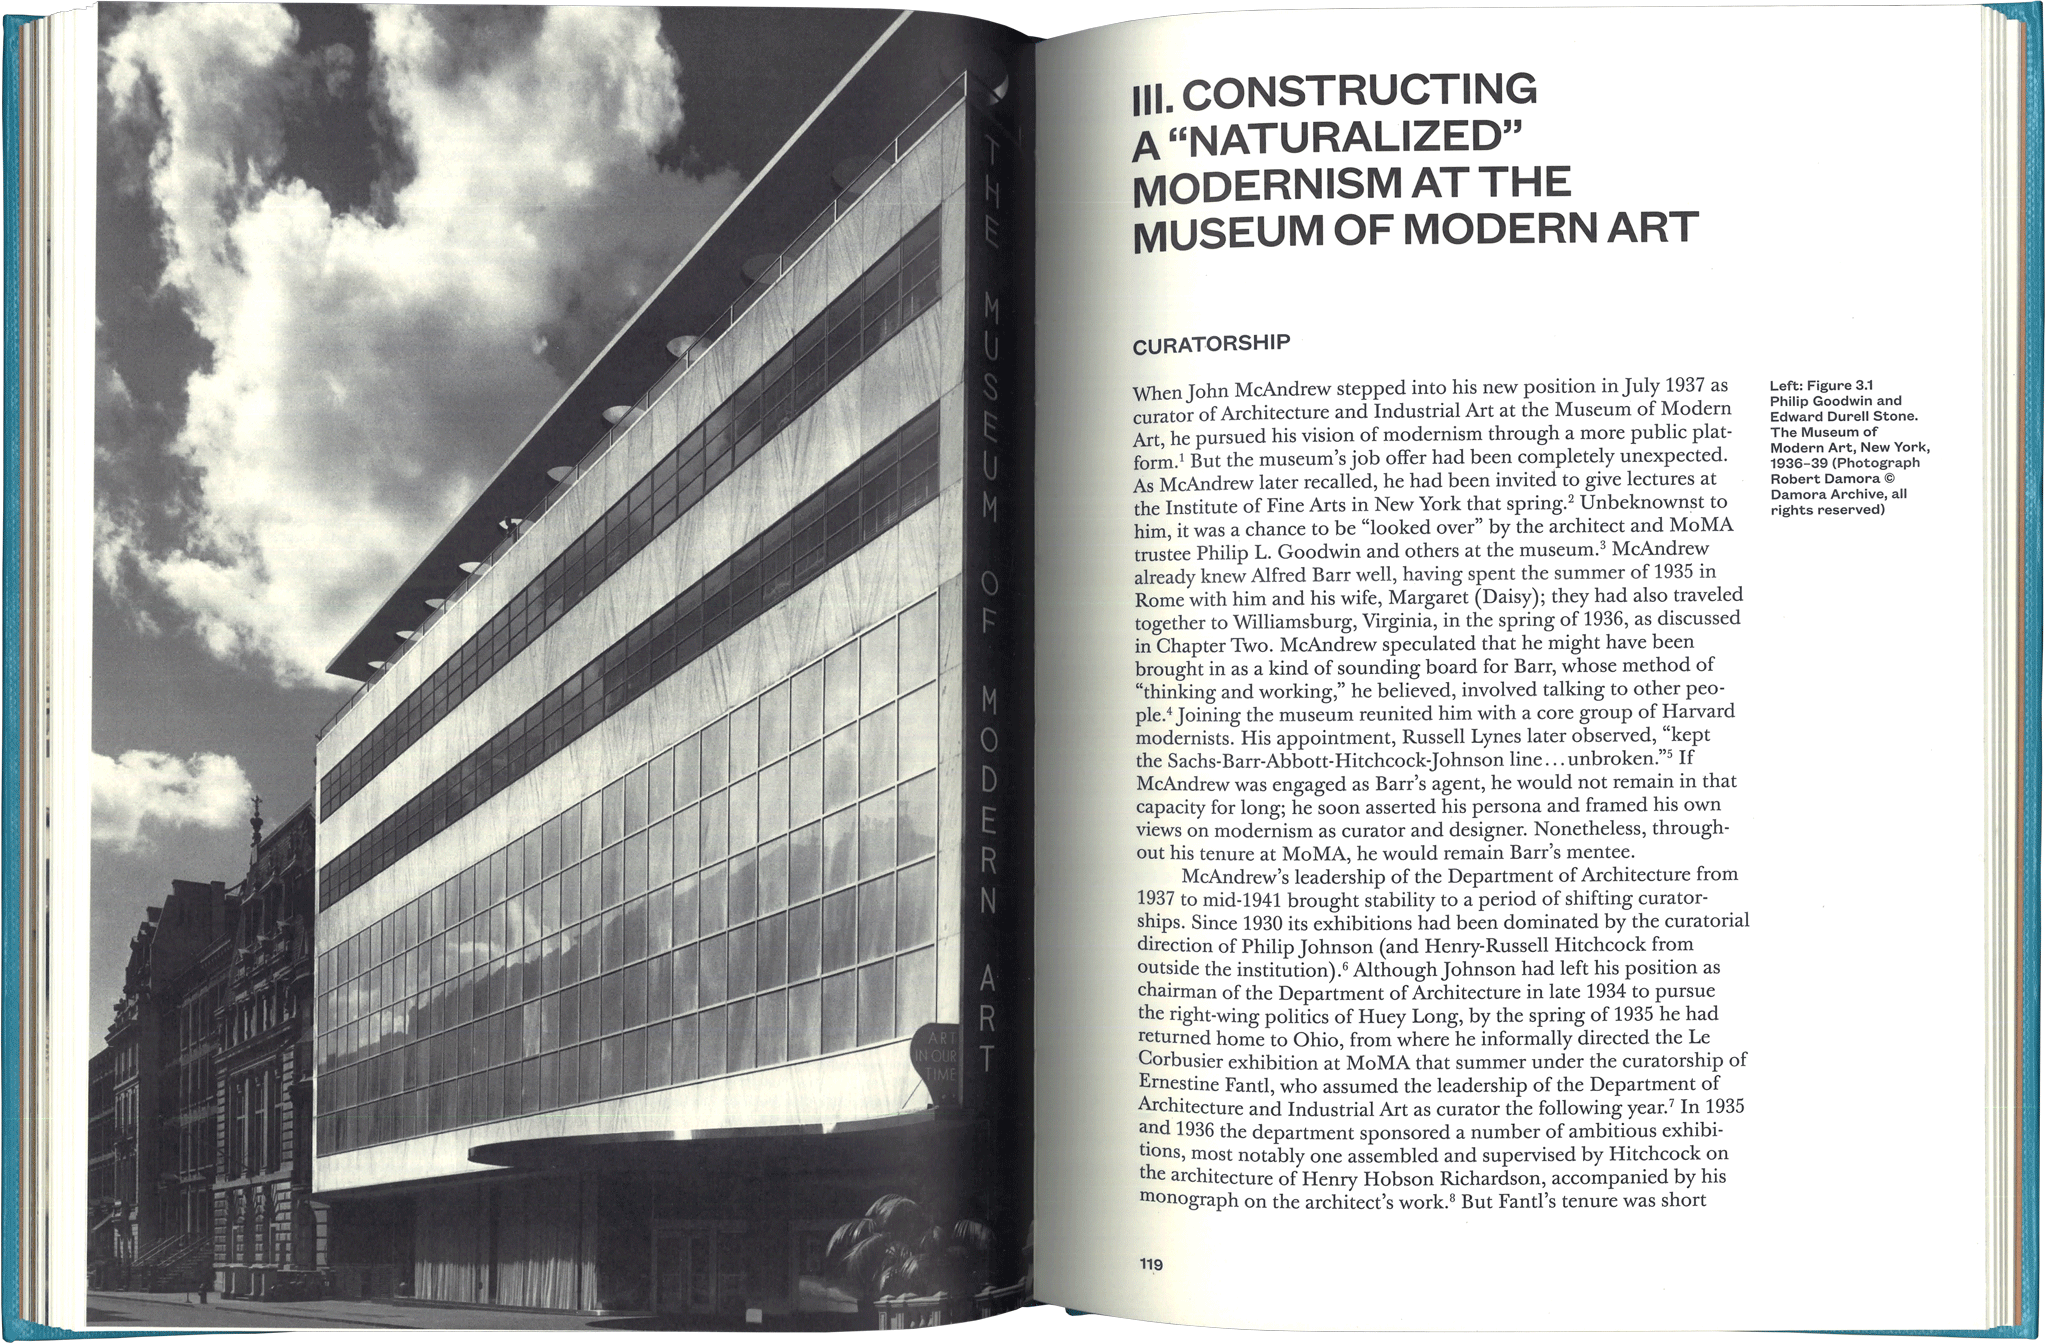 John McAndrew’s Modernist Vision spread